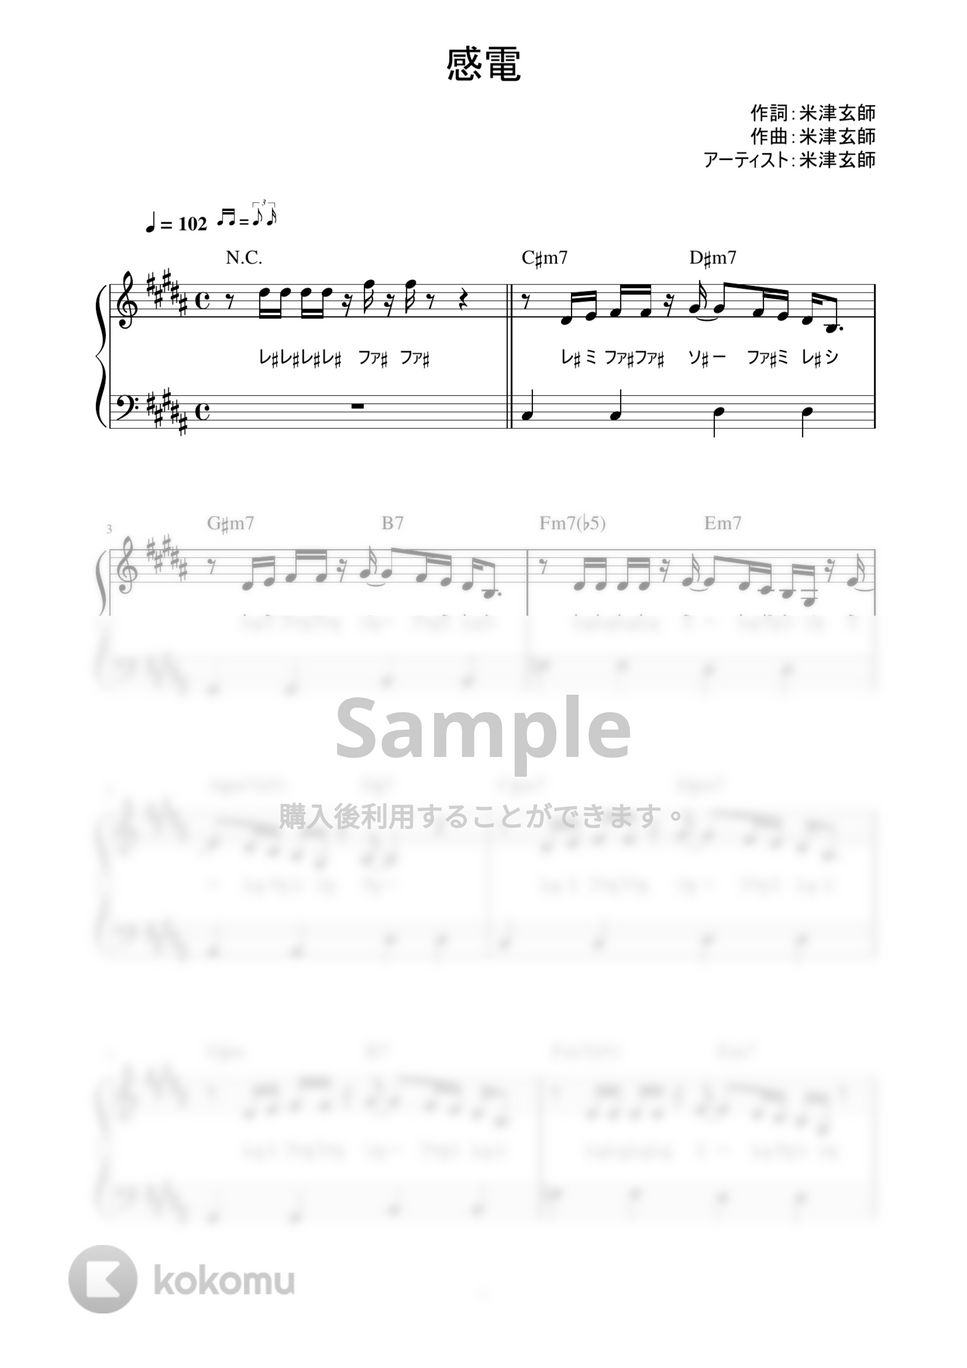 米津 玄師 - 感電 (かんたん / 歌詞付き / ドレミ付き / 初心者) by piano.tokyo